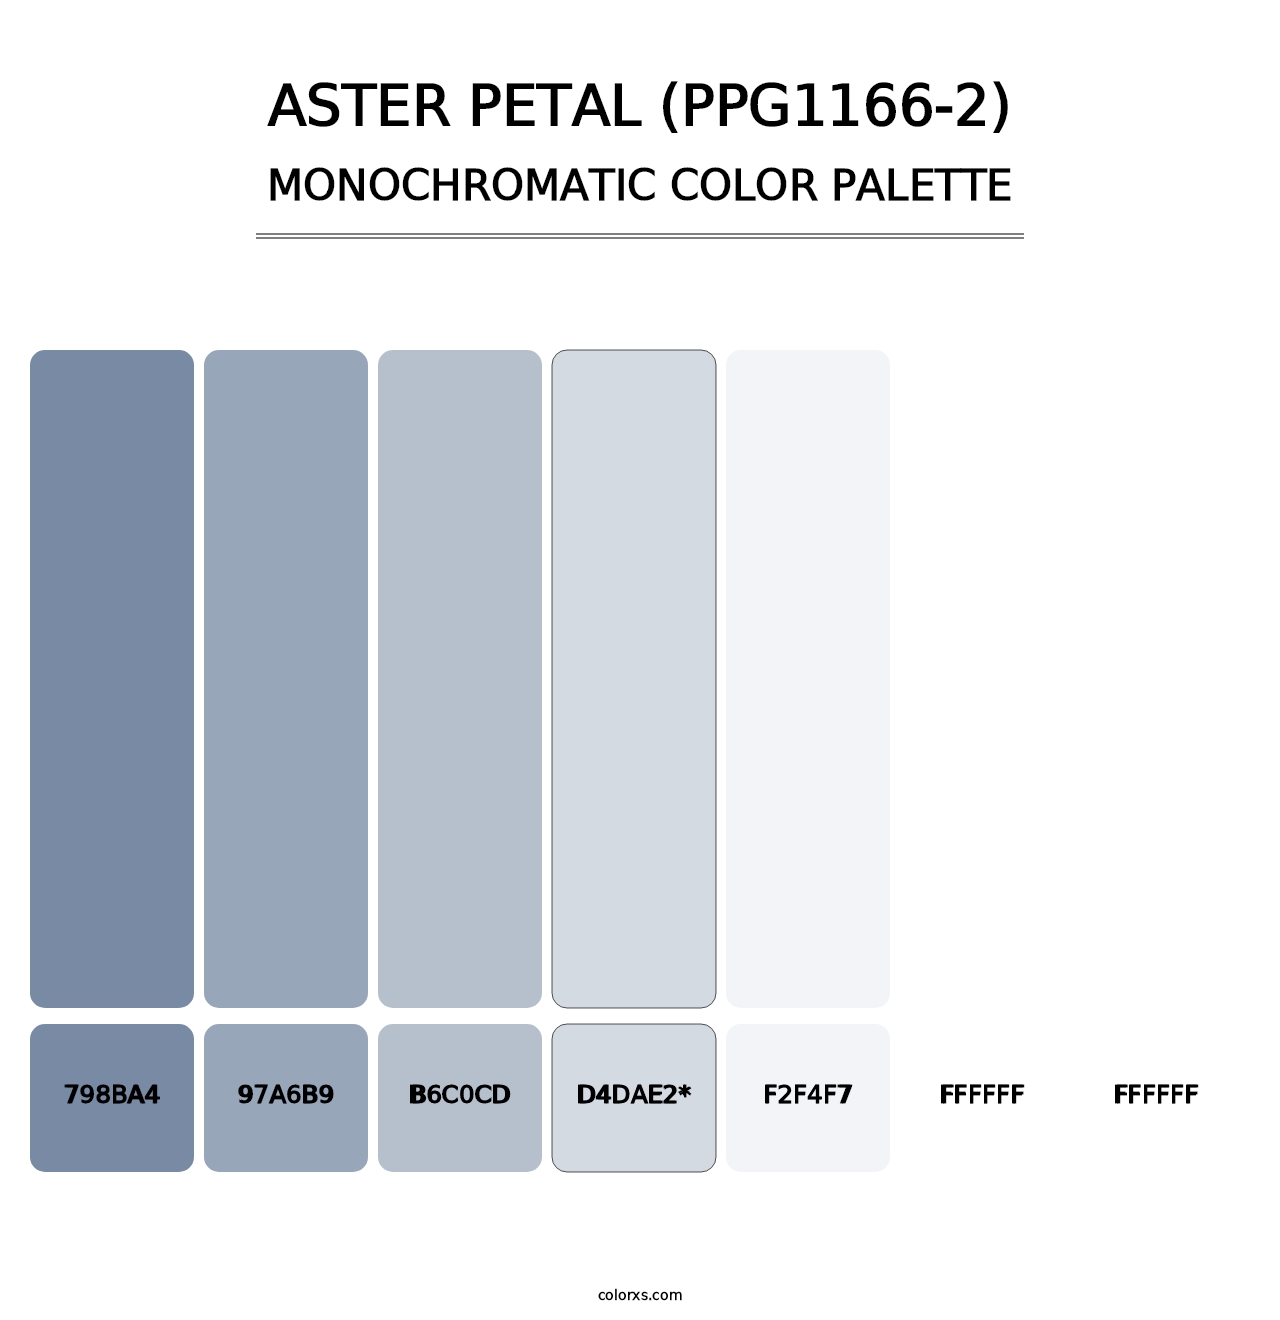 Aster Petal (PPG1166-2) - Monochromatic Color Palette